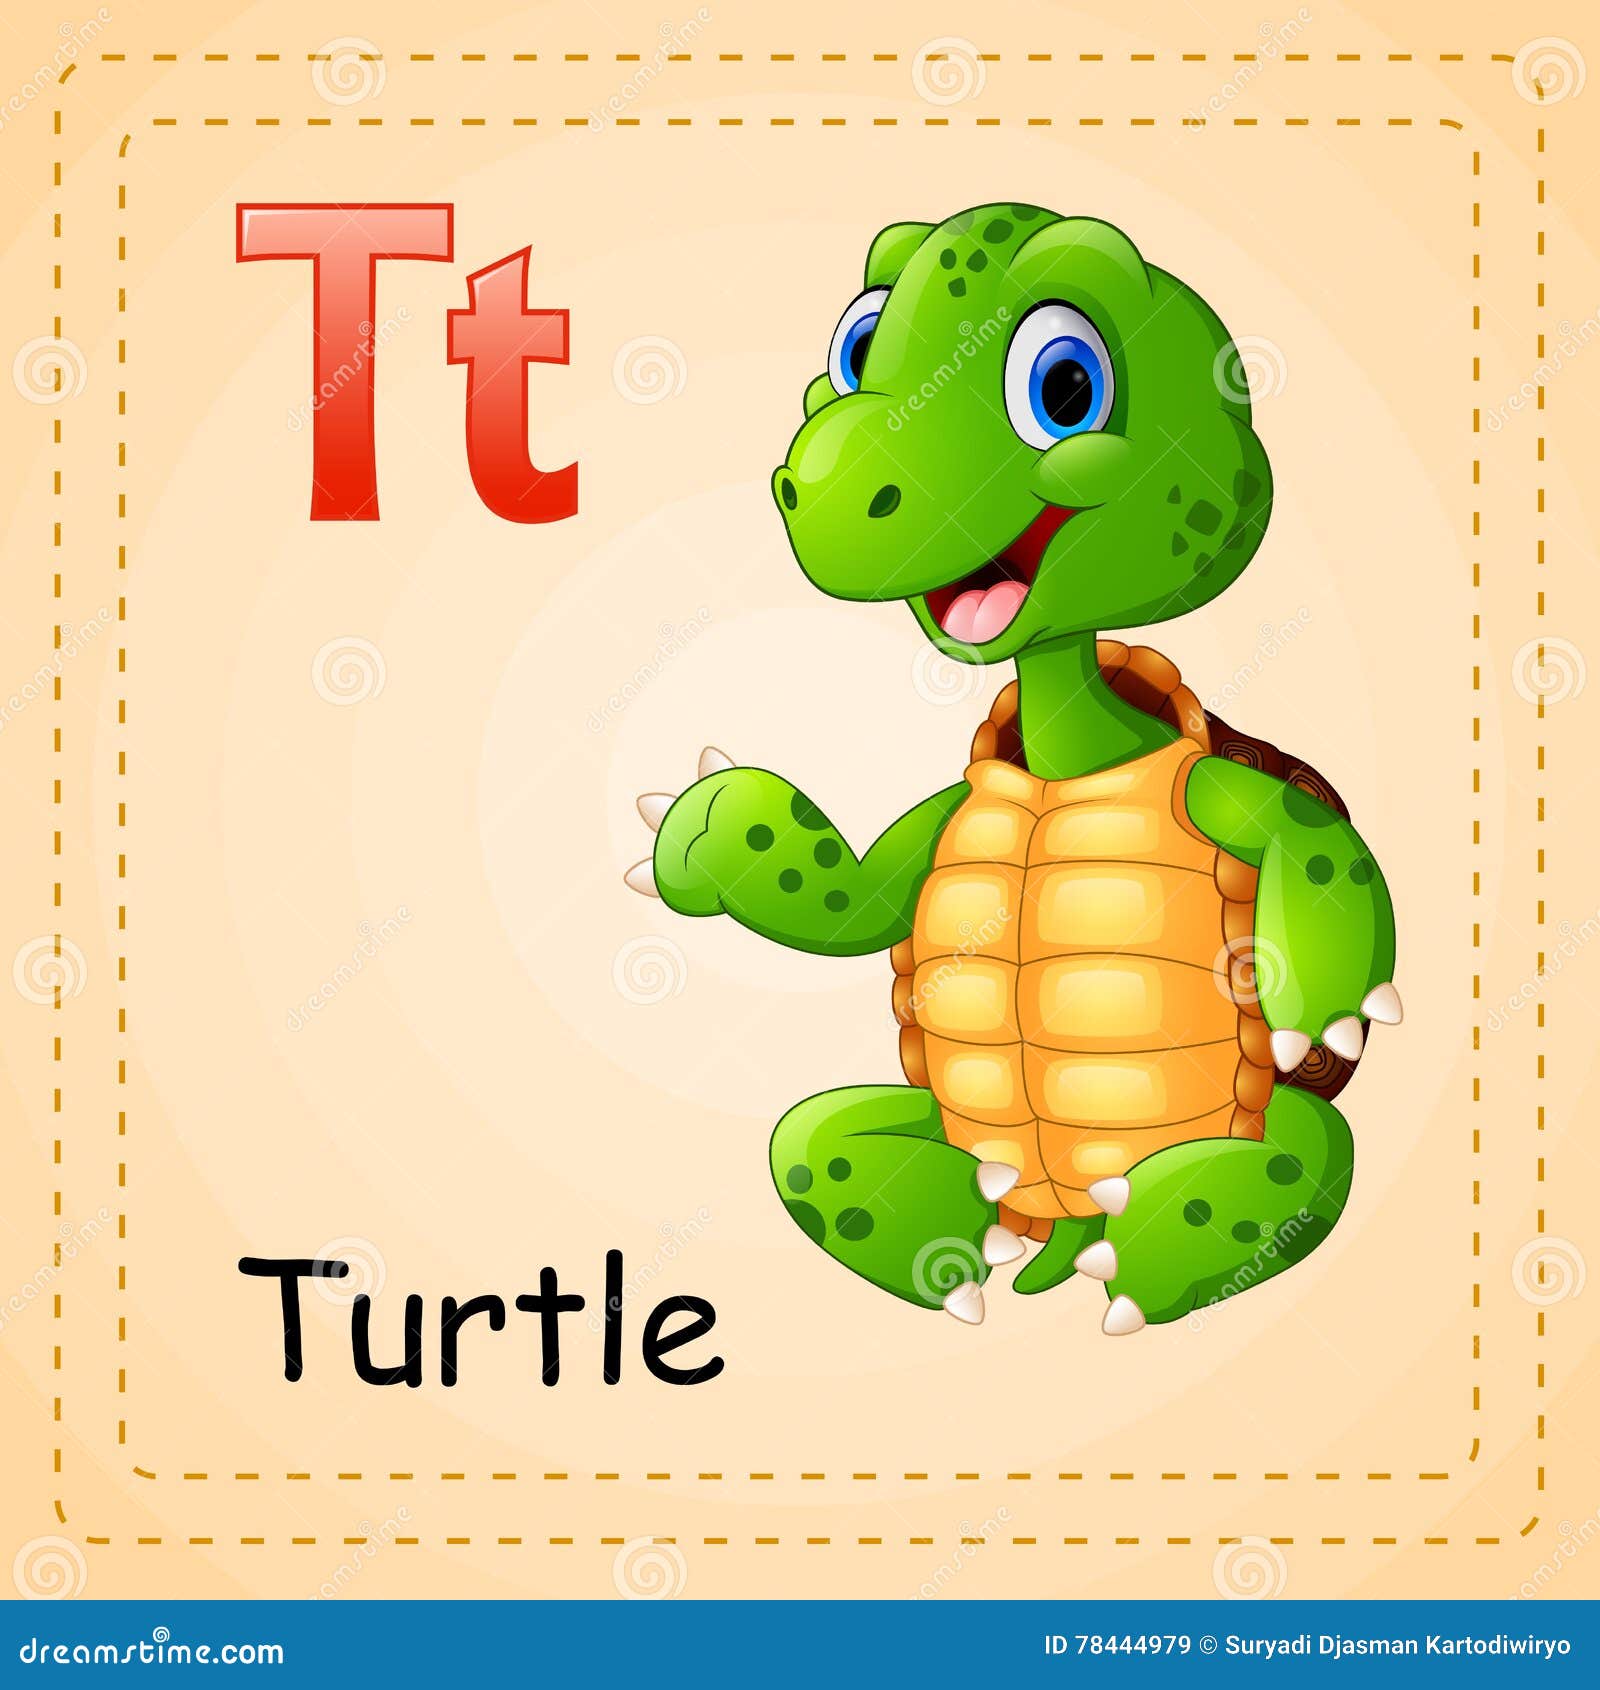 Как будет черепаха на английском. Карточка по английскому черепаха. Черепаха на англ. Черепаха по английский для детей. Карточка черепаха для детей.